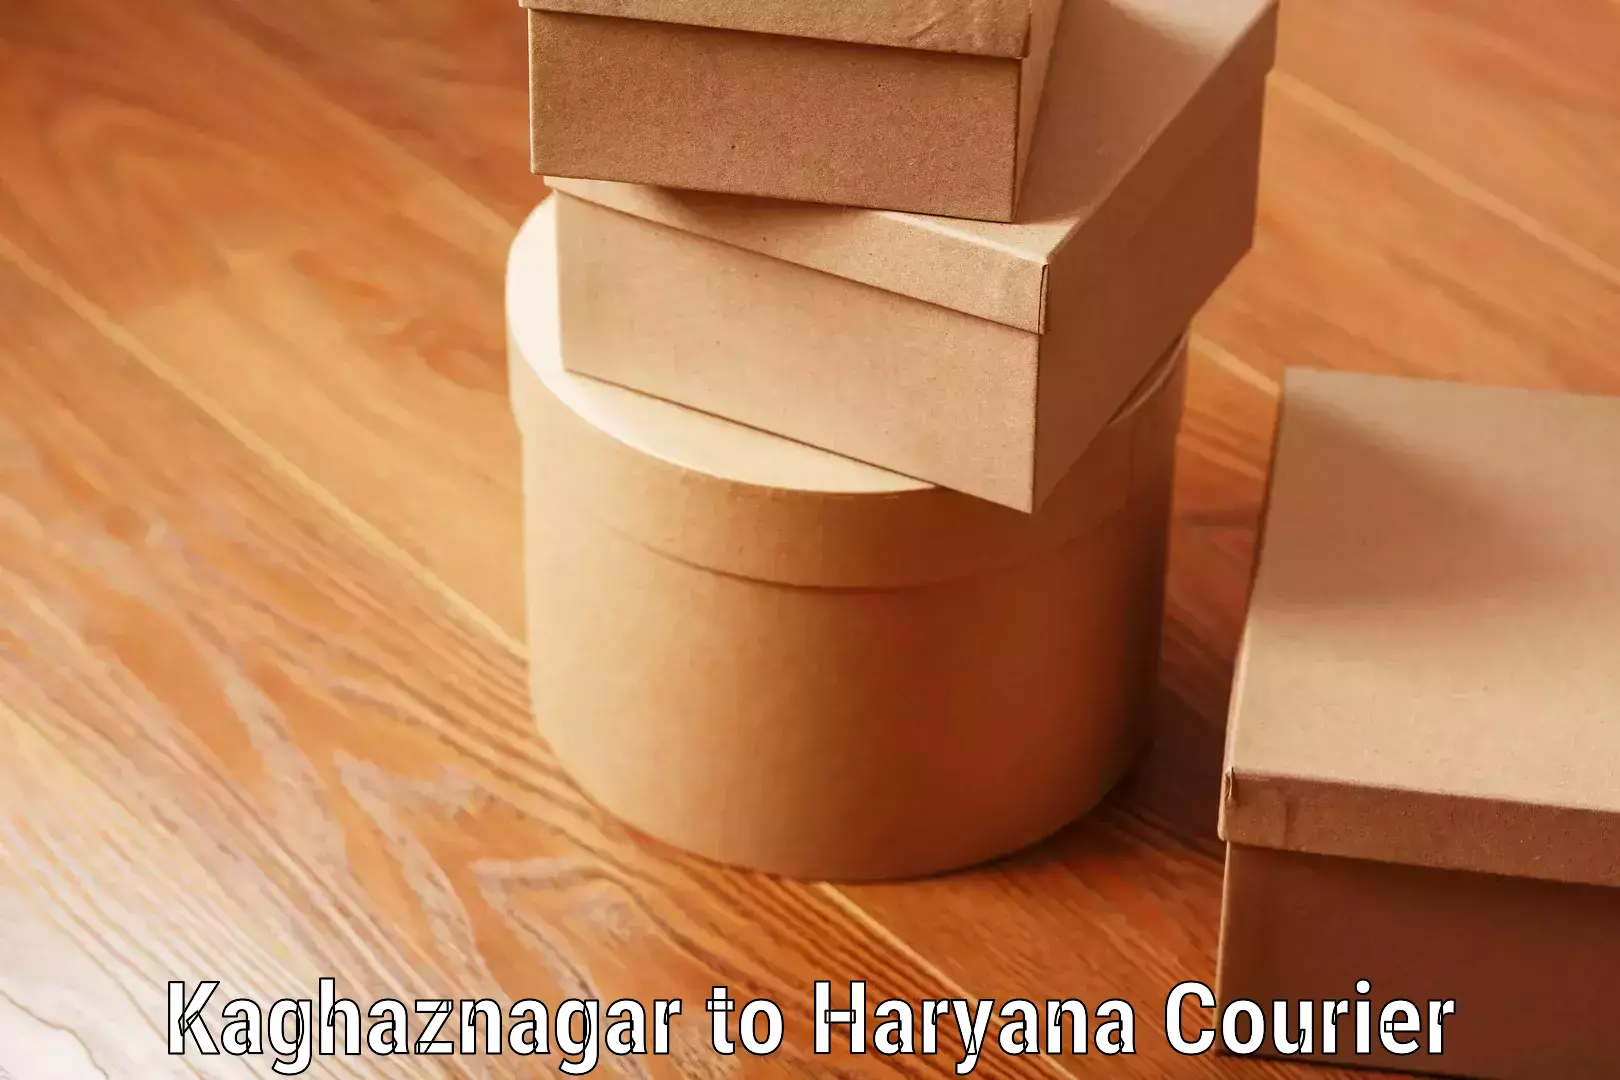 Comprehensive baggage service Kaghaznagar to Chaudhary Charan Singh Haryana Agricultural University Hisar